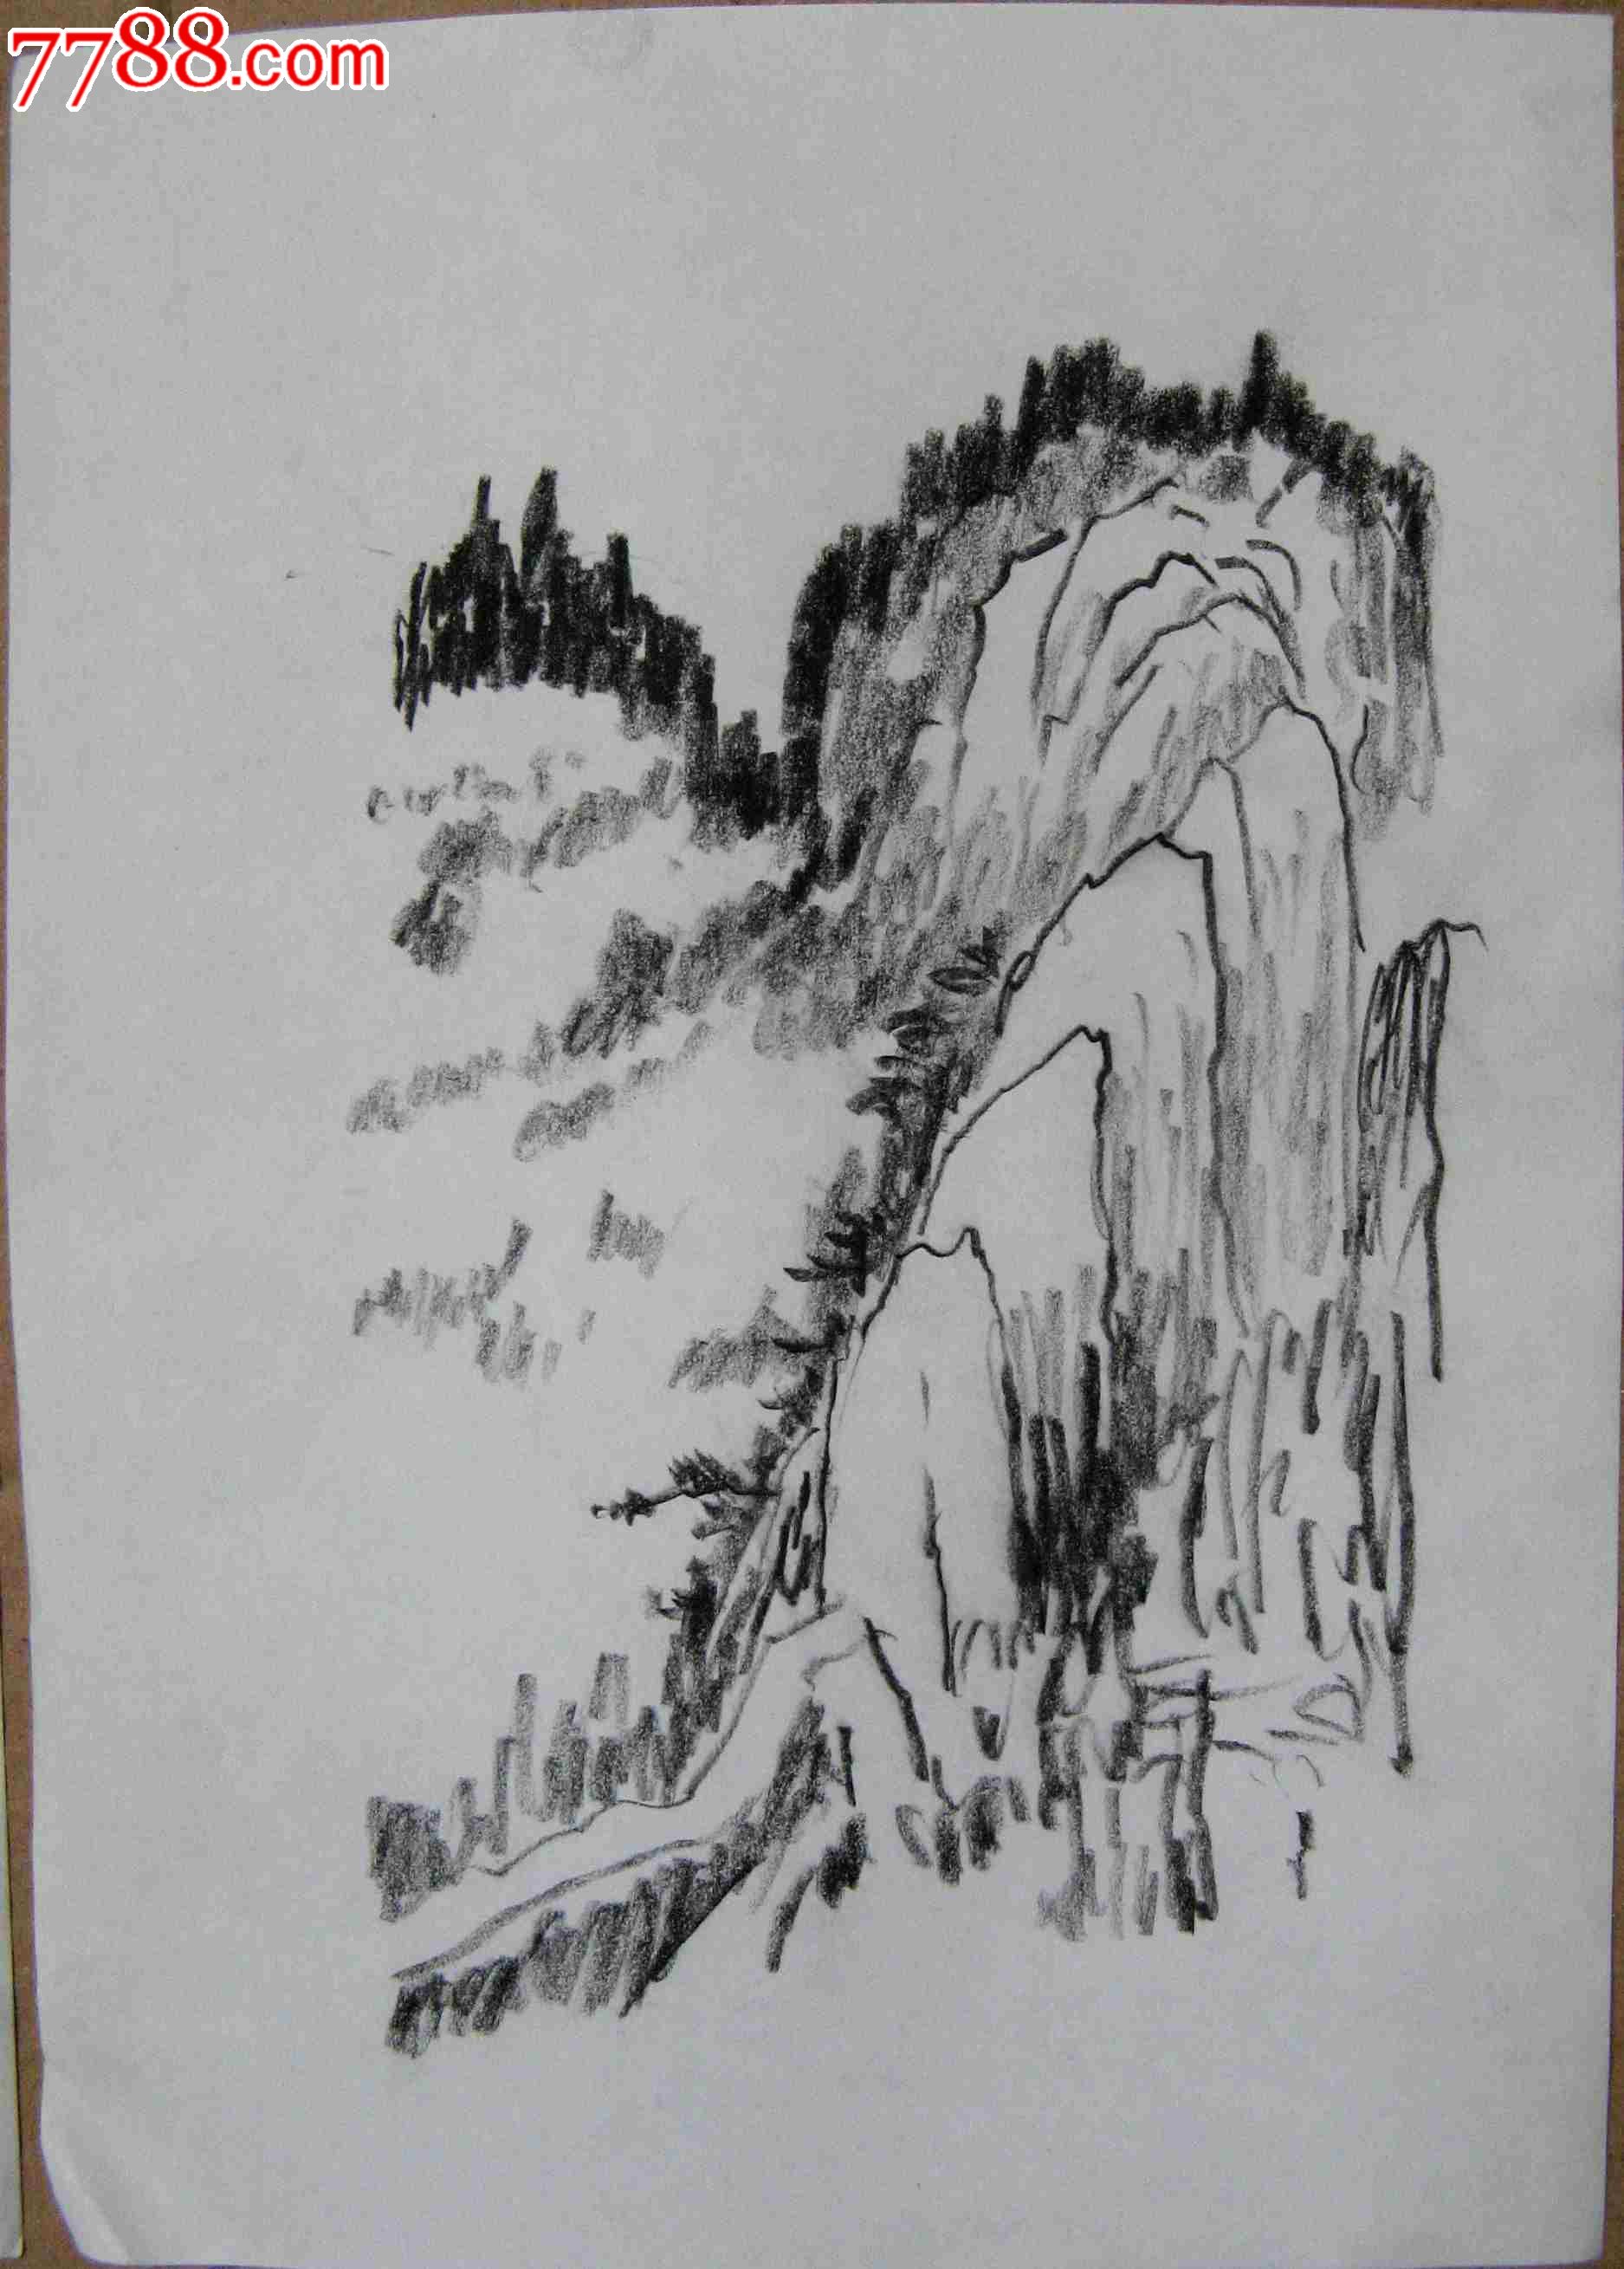 画家素描画稿山水风景画2幅,素描/速写,铅笔画原画,山水,21世纪初,16